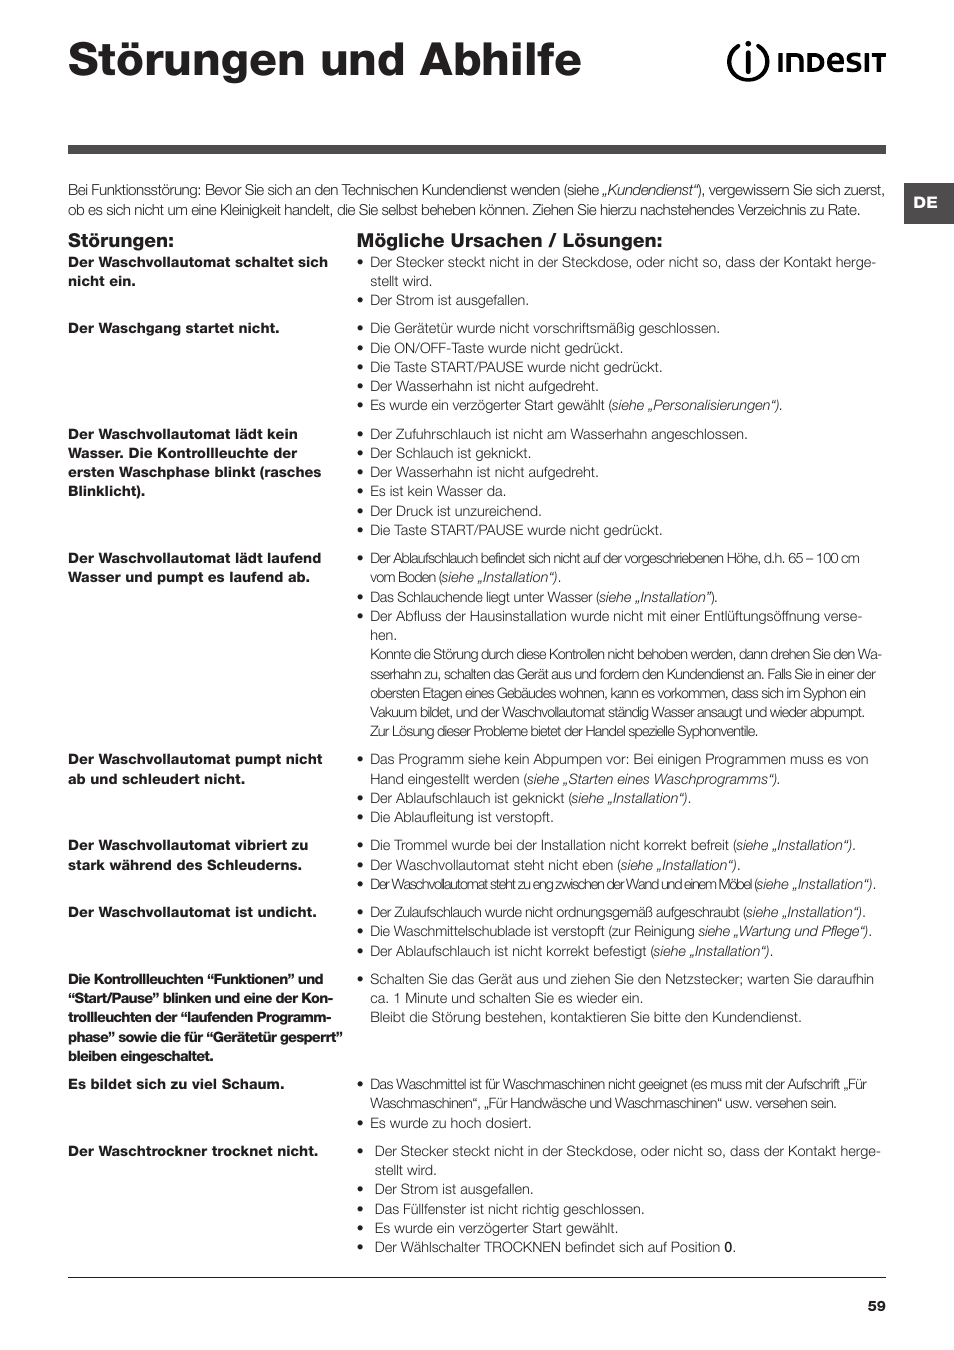 Störungen und abhilfe, Störungen, Mögliche ursachen / lösungen | Indesit  IWDC-71680-ECO-(EU) User Manual | Page 59 / 84 | Original mode